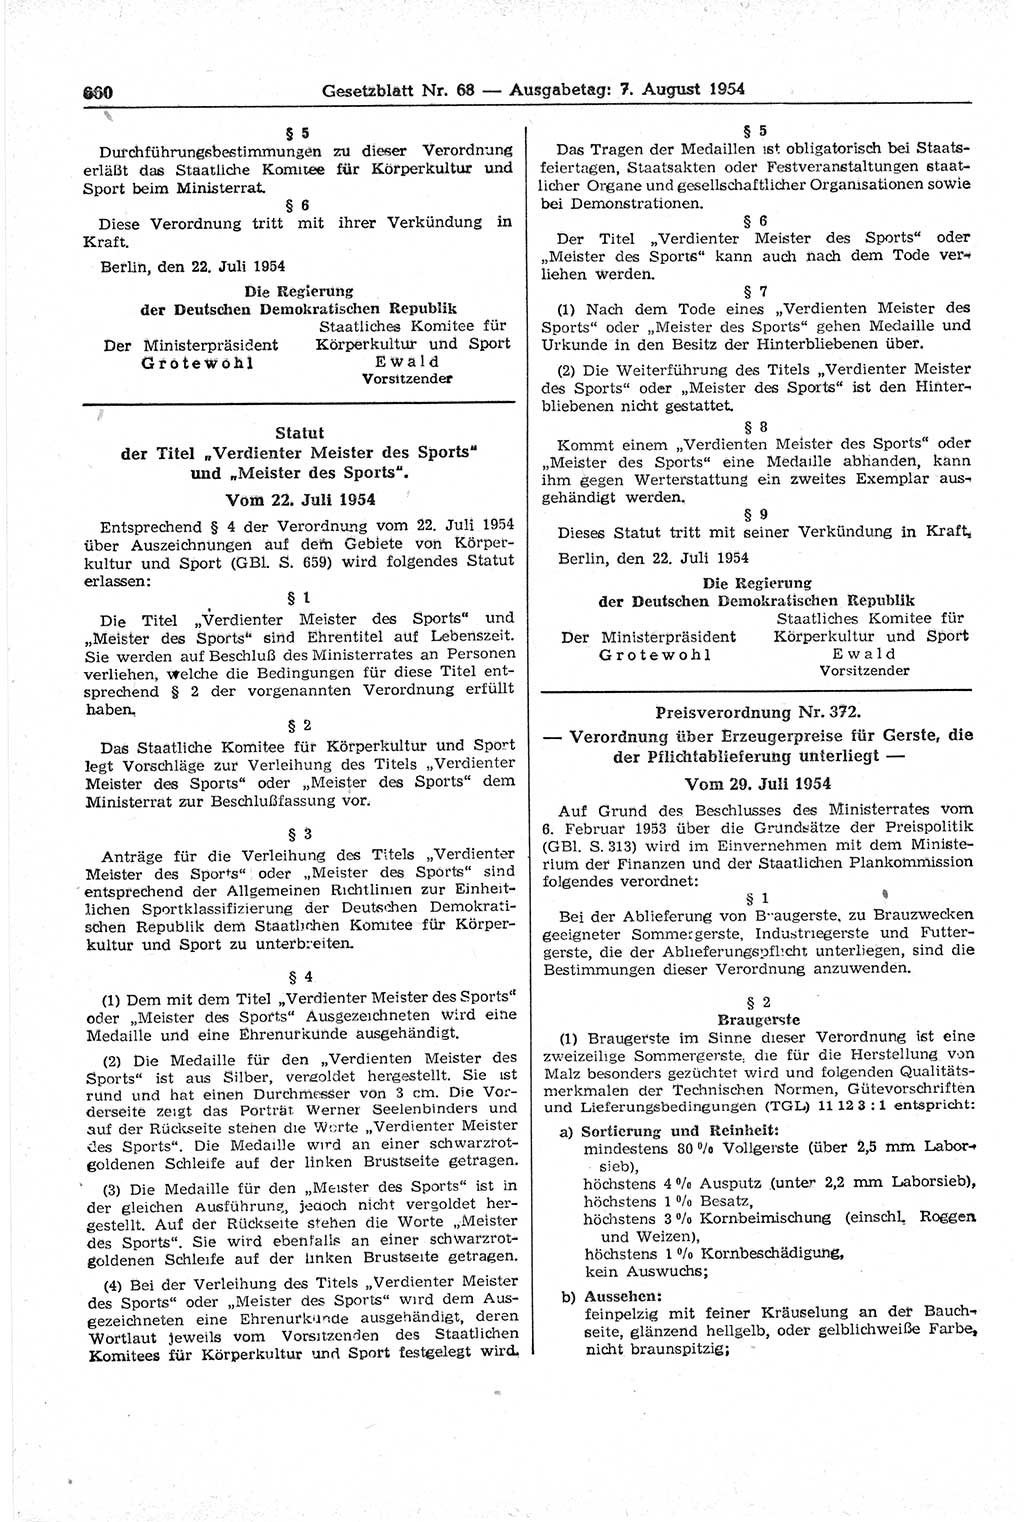 Gesetzblatt (GBl.) der Deutschen Demokratischen Republik (DDR) 1954, Seite 660 (GBl. DDR 1954, S. 660)